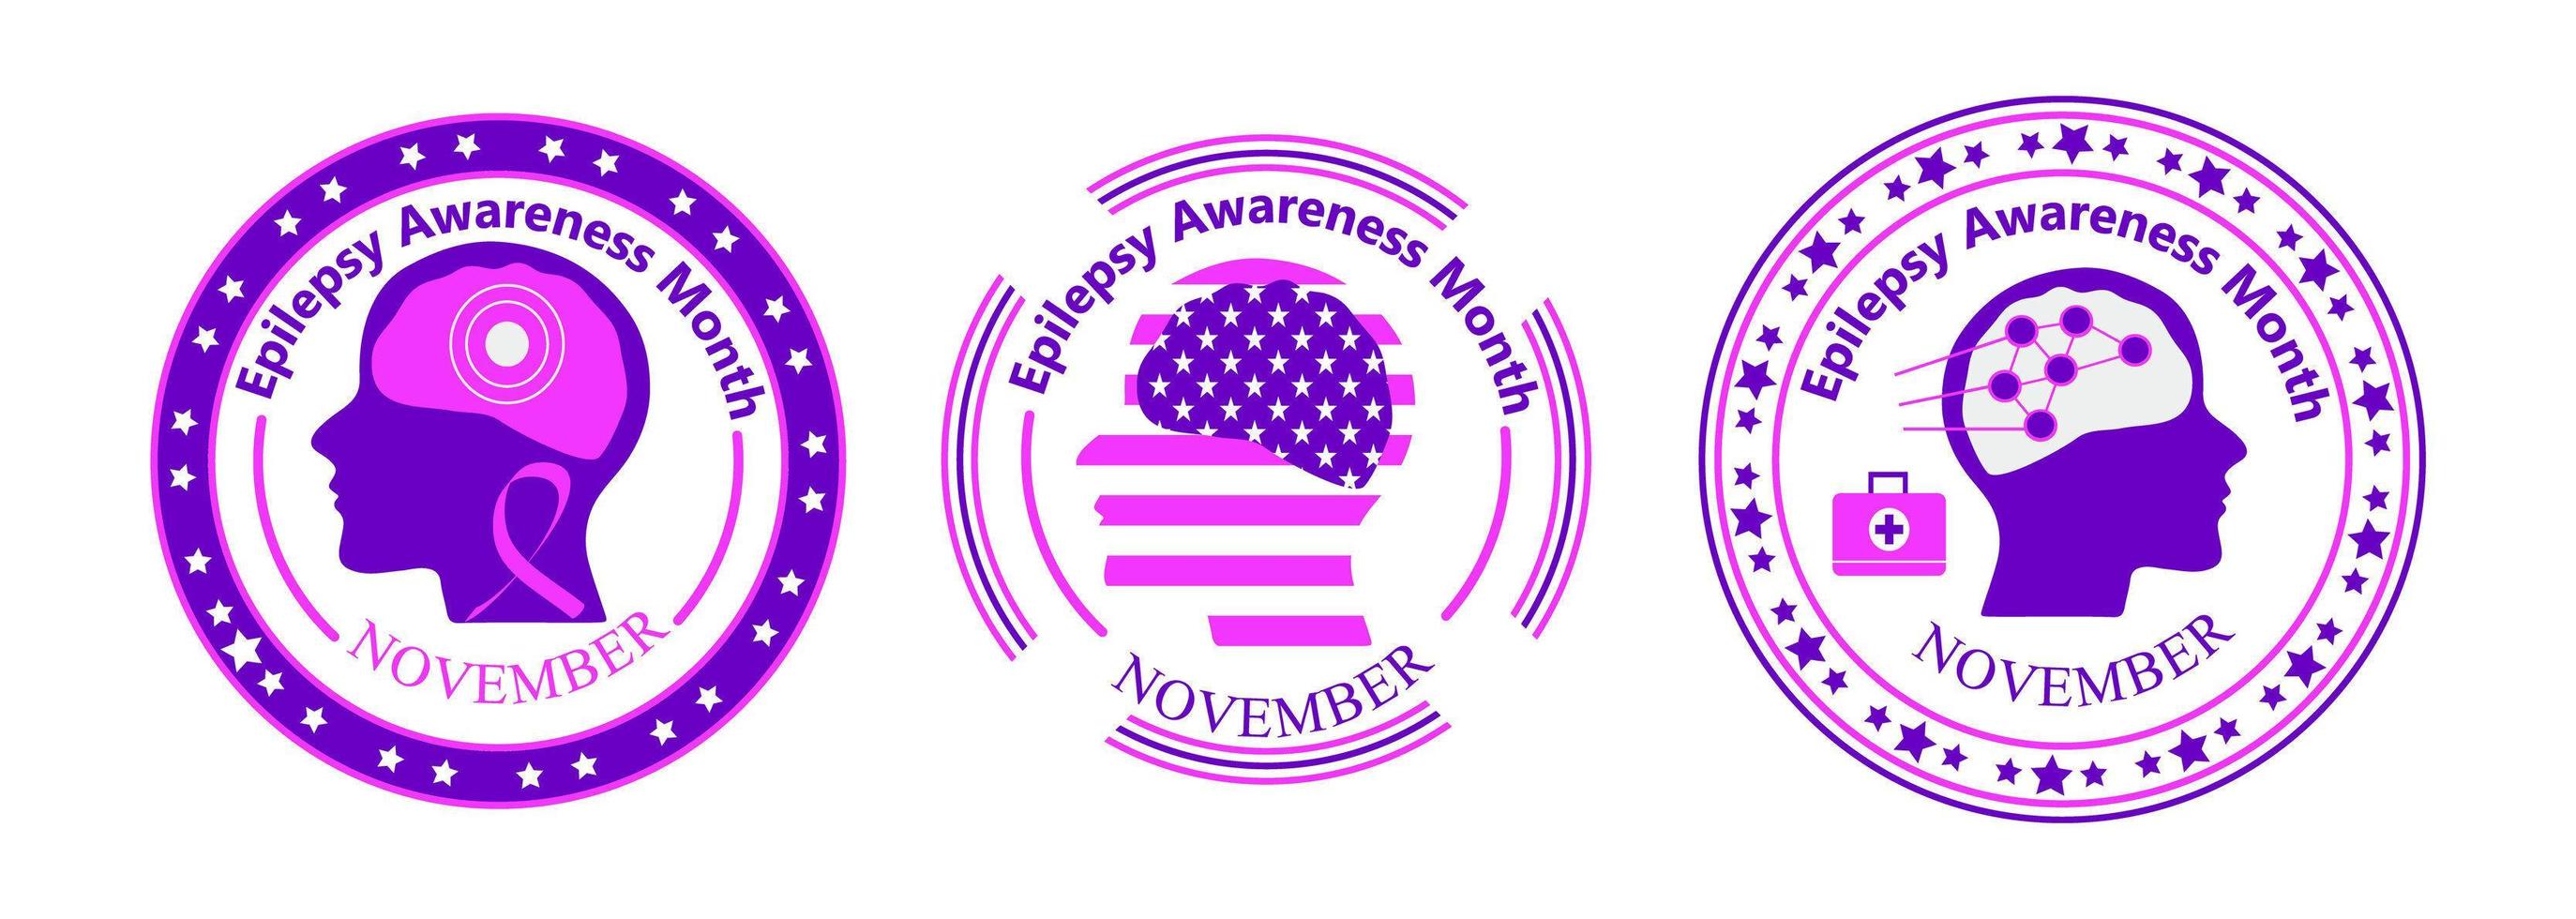 le mois de sensibilisation à l'épilepsie est organisé en novembre aux états-unis. ruban violet, cerveau, étoiles sont affichés. vecteur